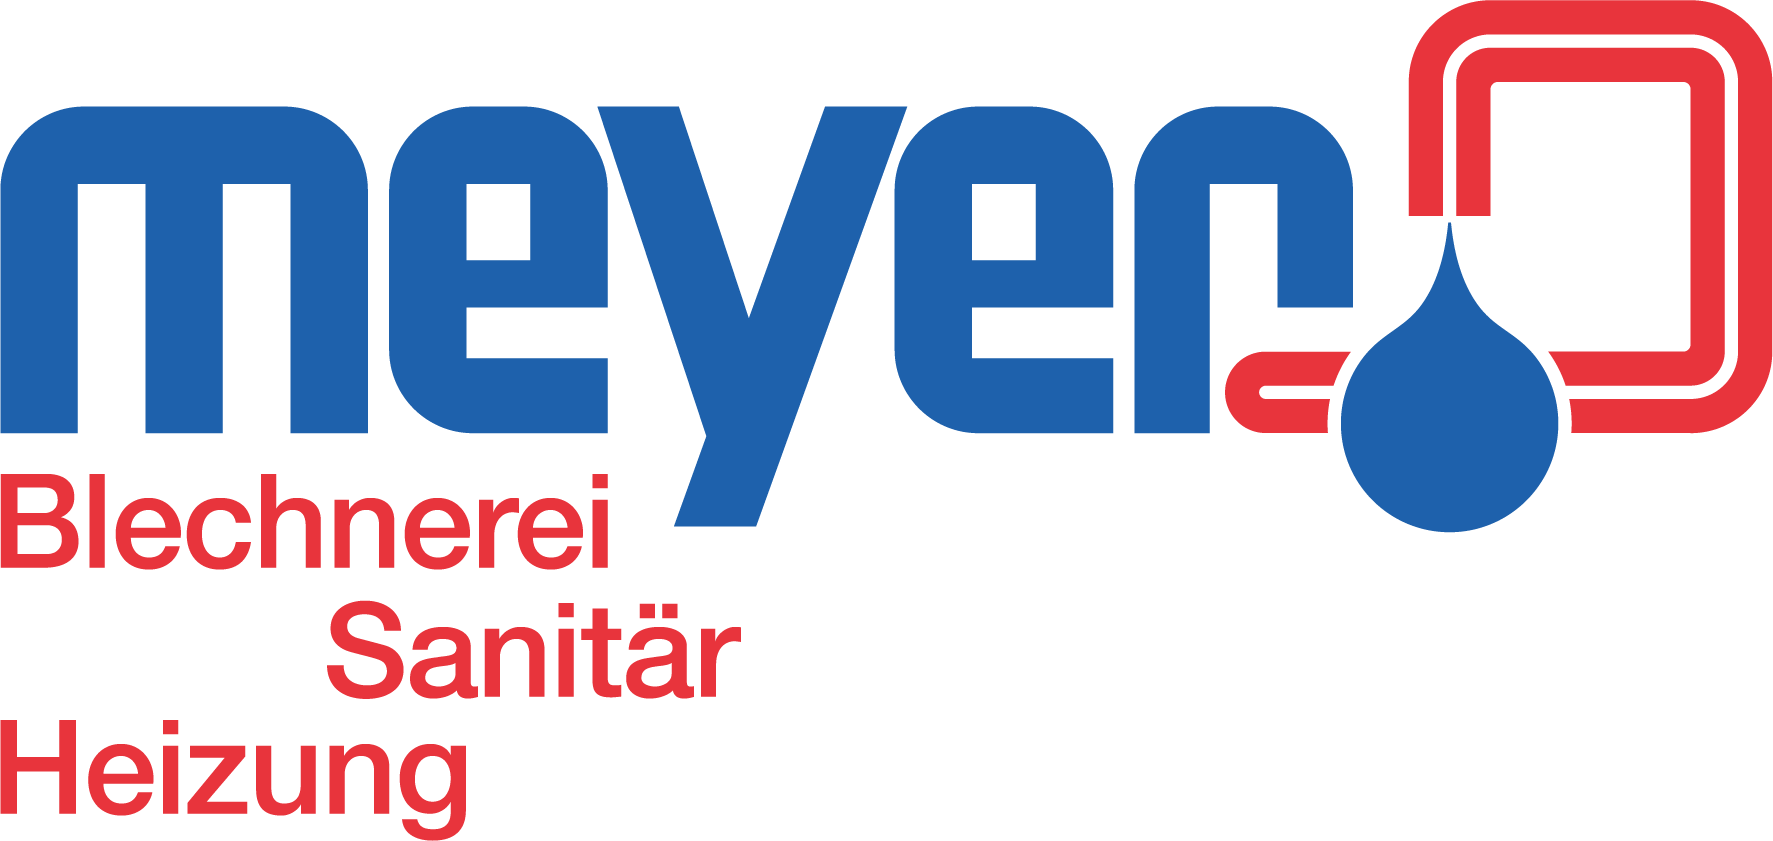 Meyer, Blechnerei, Sanitär, Heizung Logo